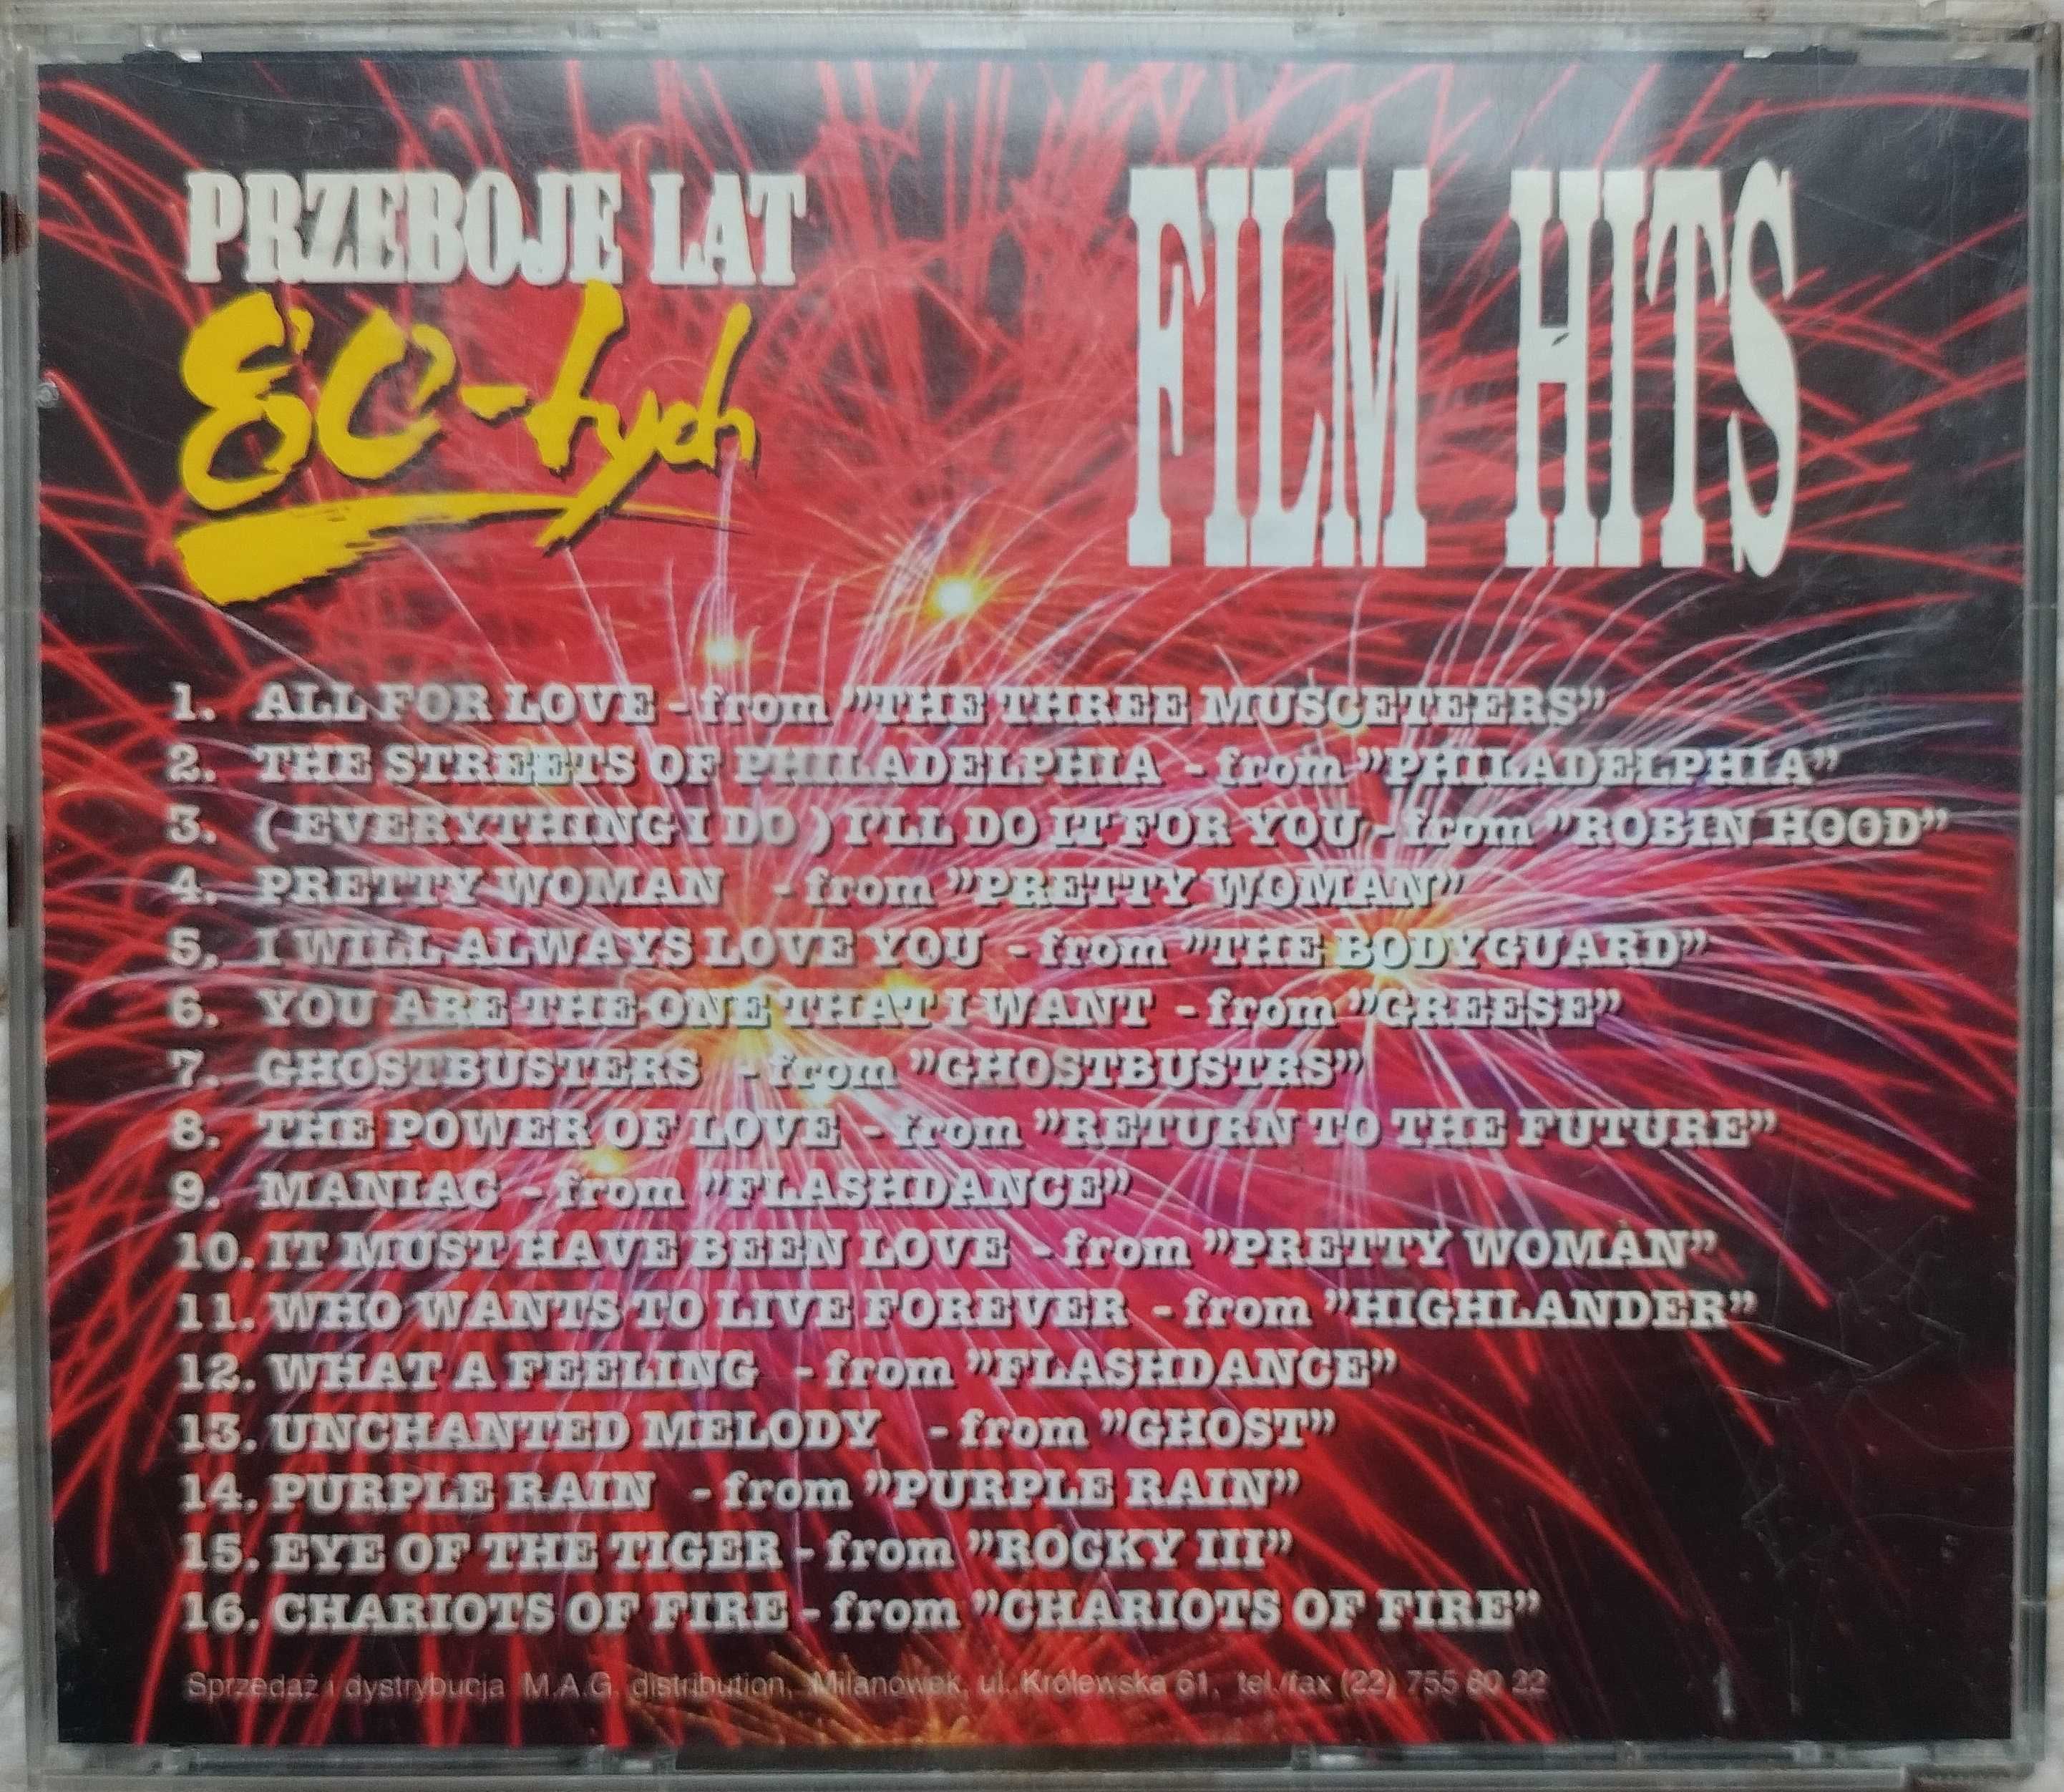 płyta CD: FILM HITS - "Przeboje lat 80-tych”